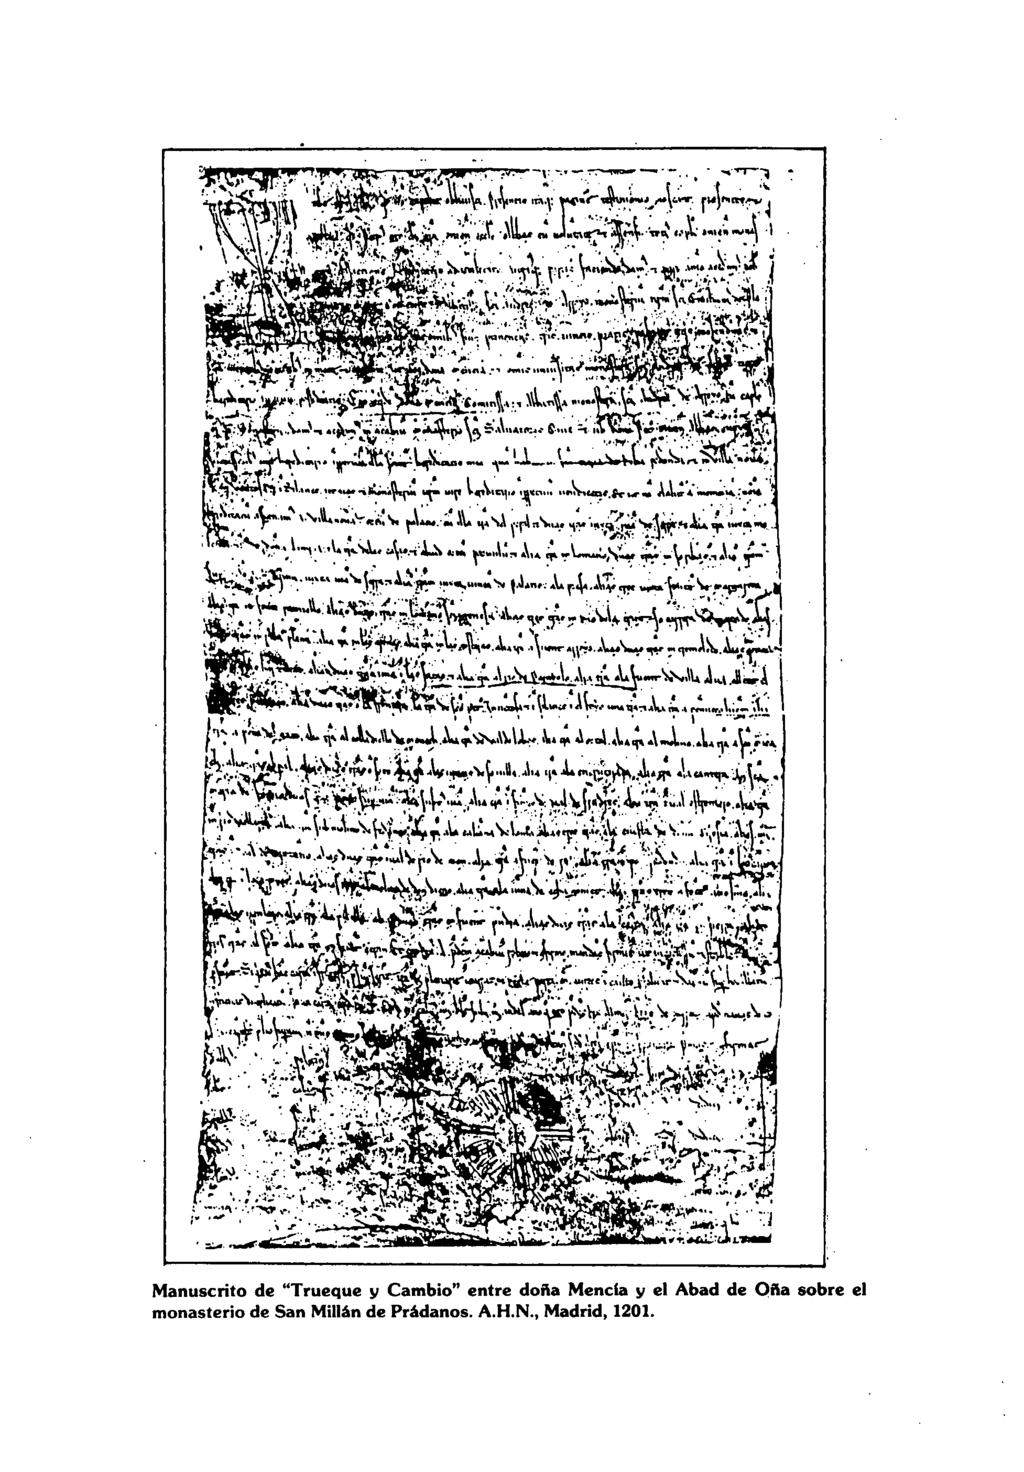 Manuscrito de "Trueque y Cambio" entre doña Menda y el Abad de Oña